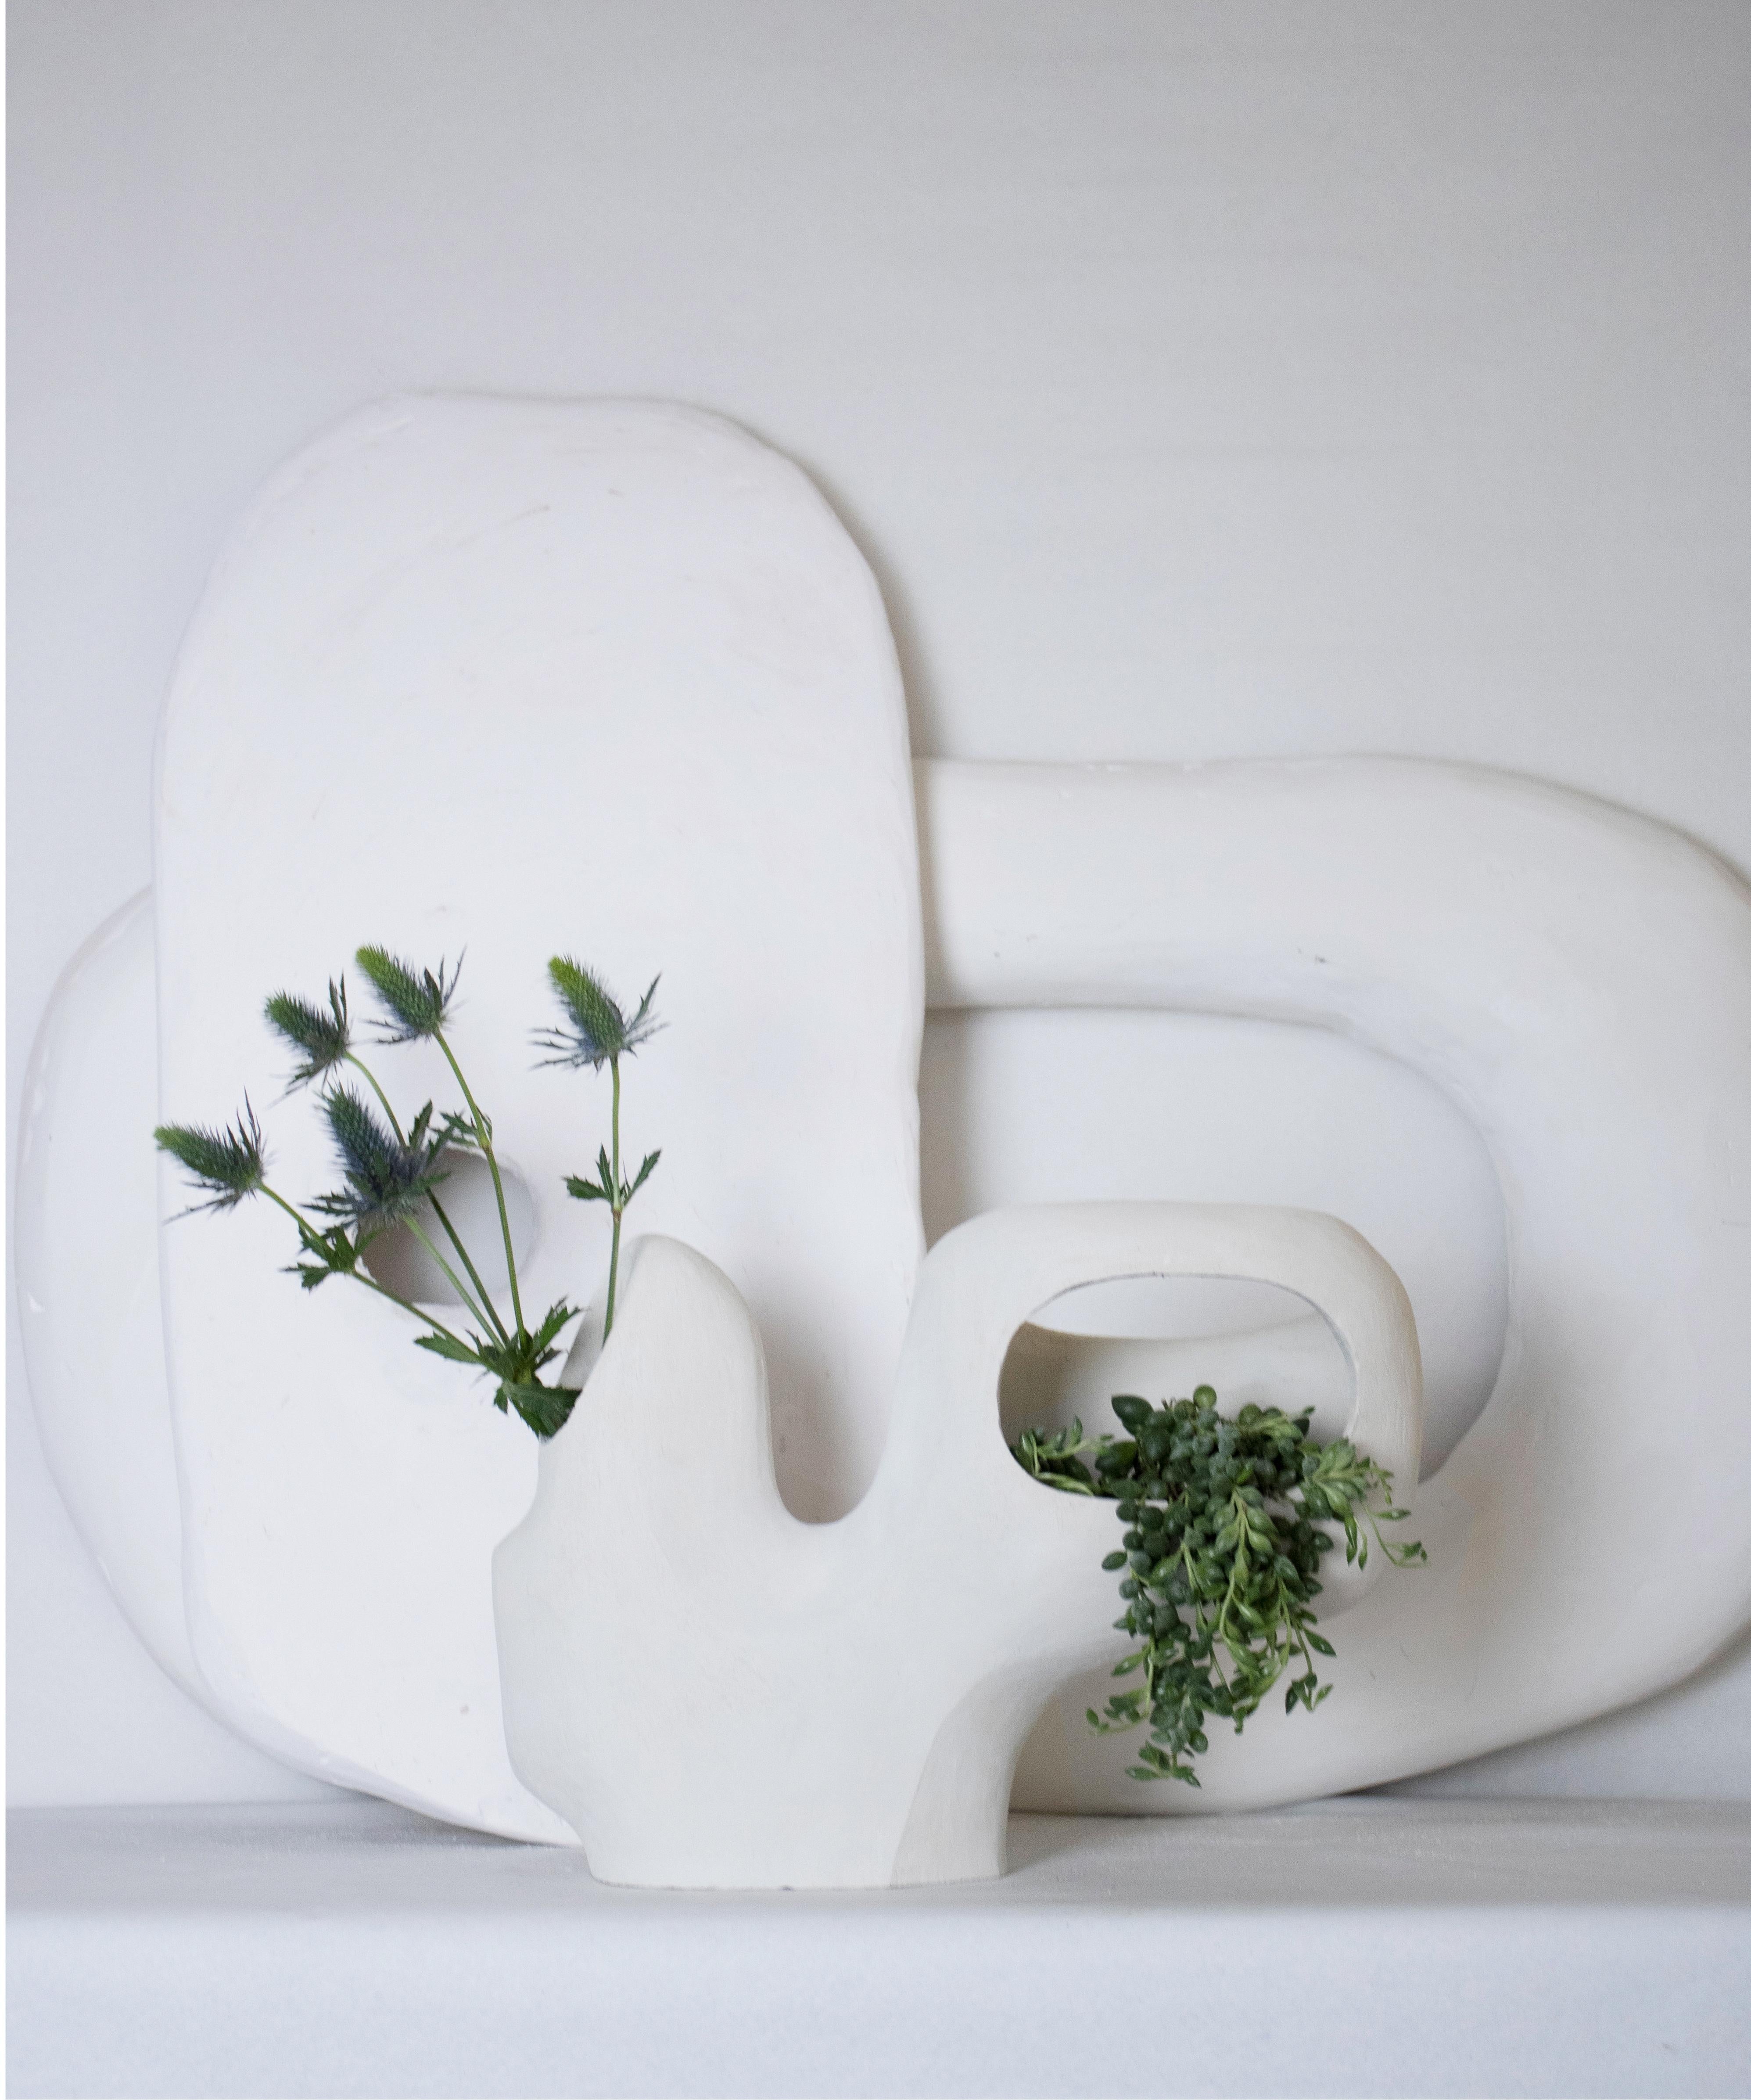 Die Vase No_05 ist eine handgefertigte Ikebana-Keramikvase aus der Kado Collection 